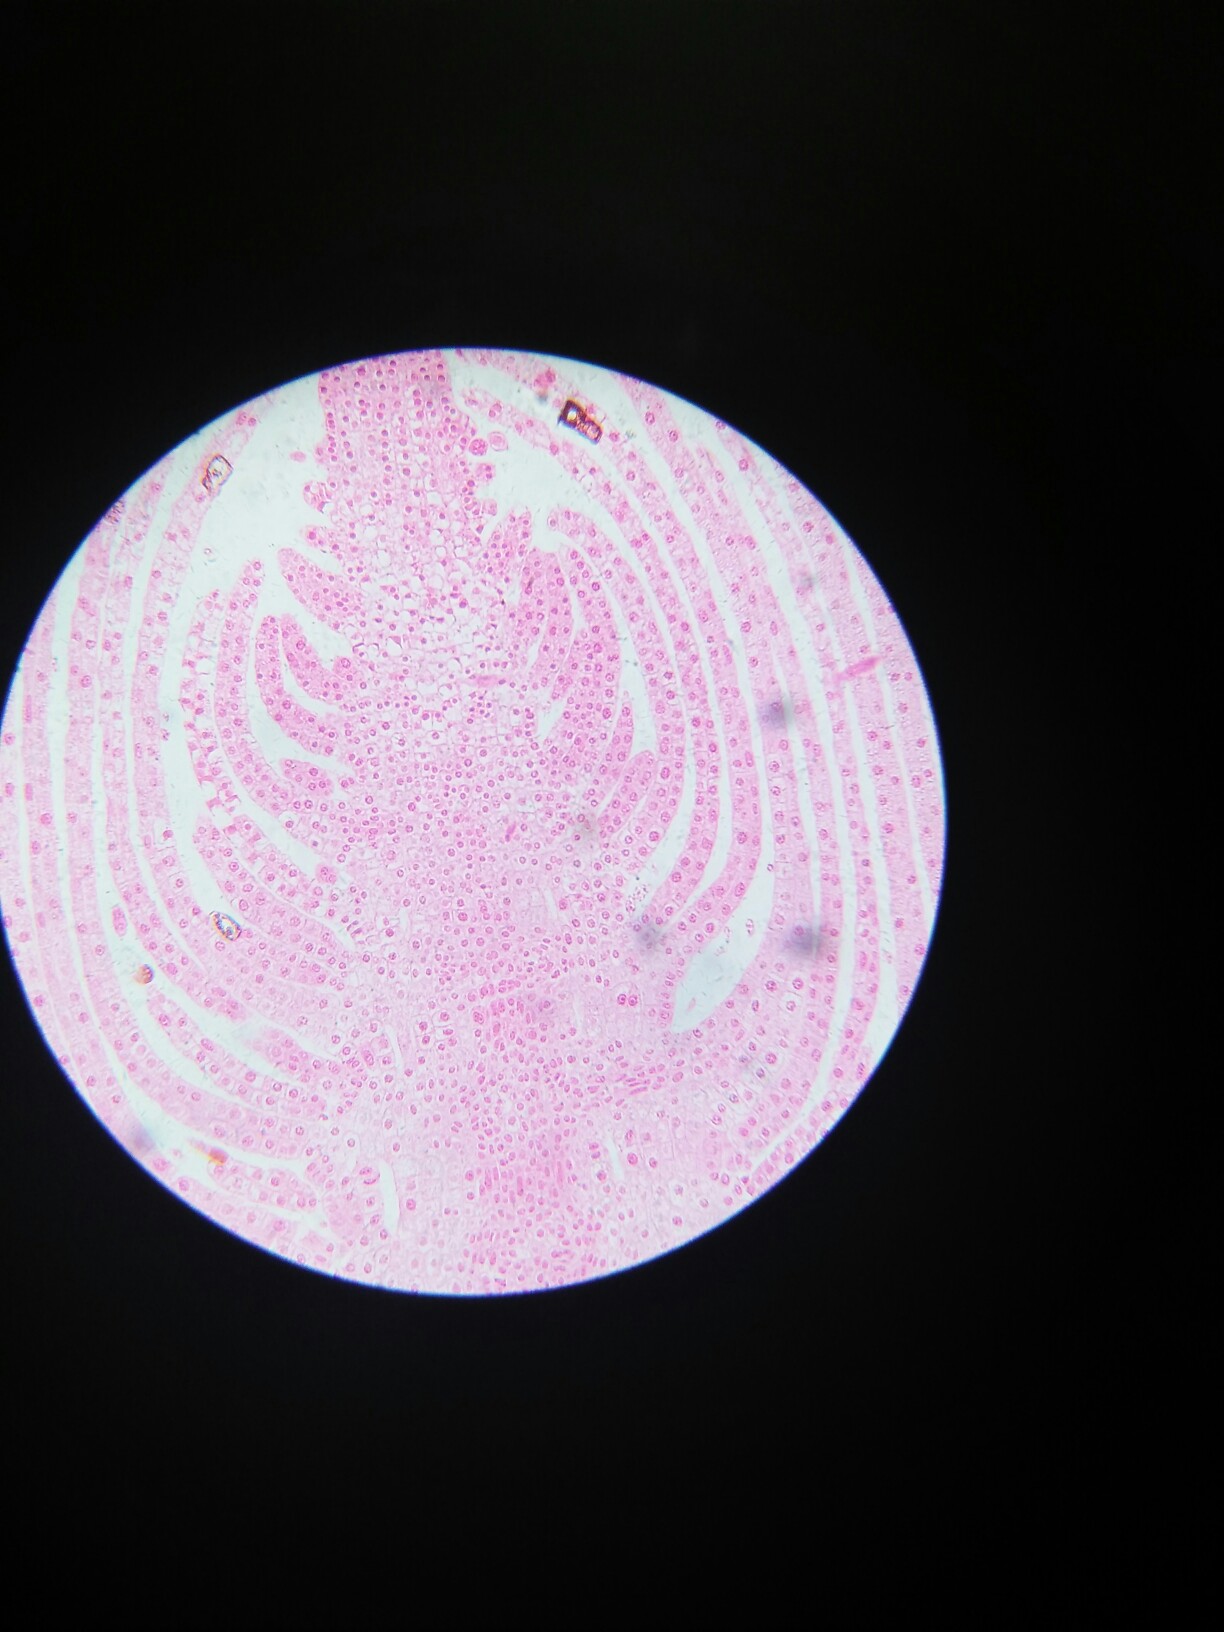 百合胚珠纵切结构图图片